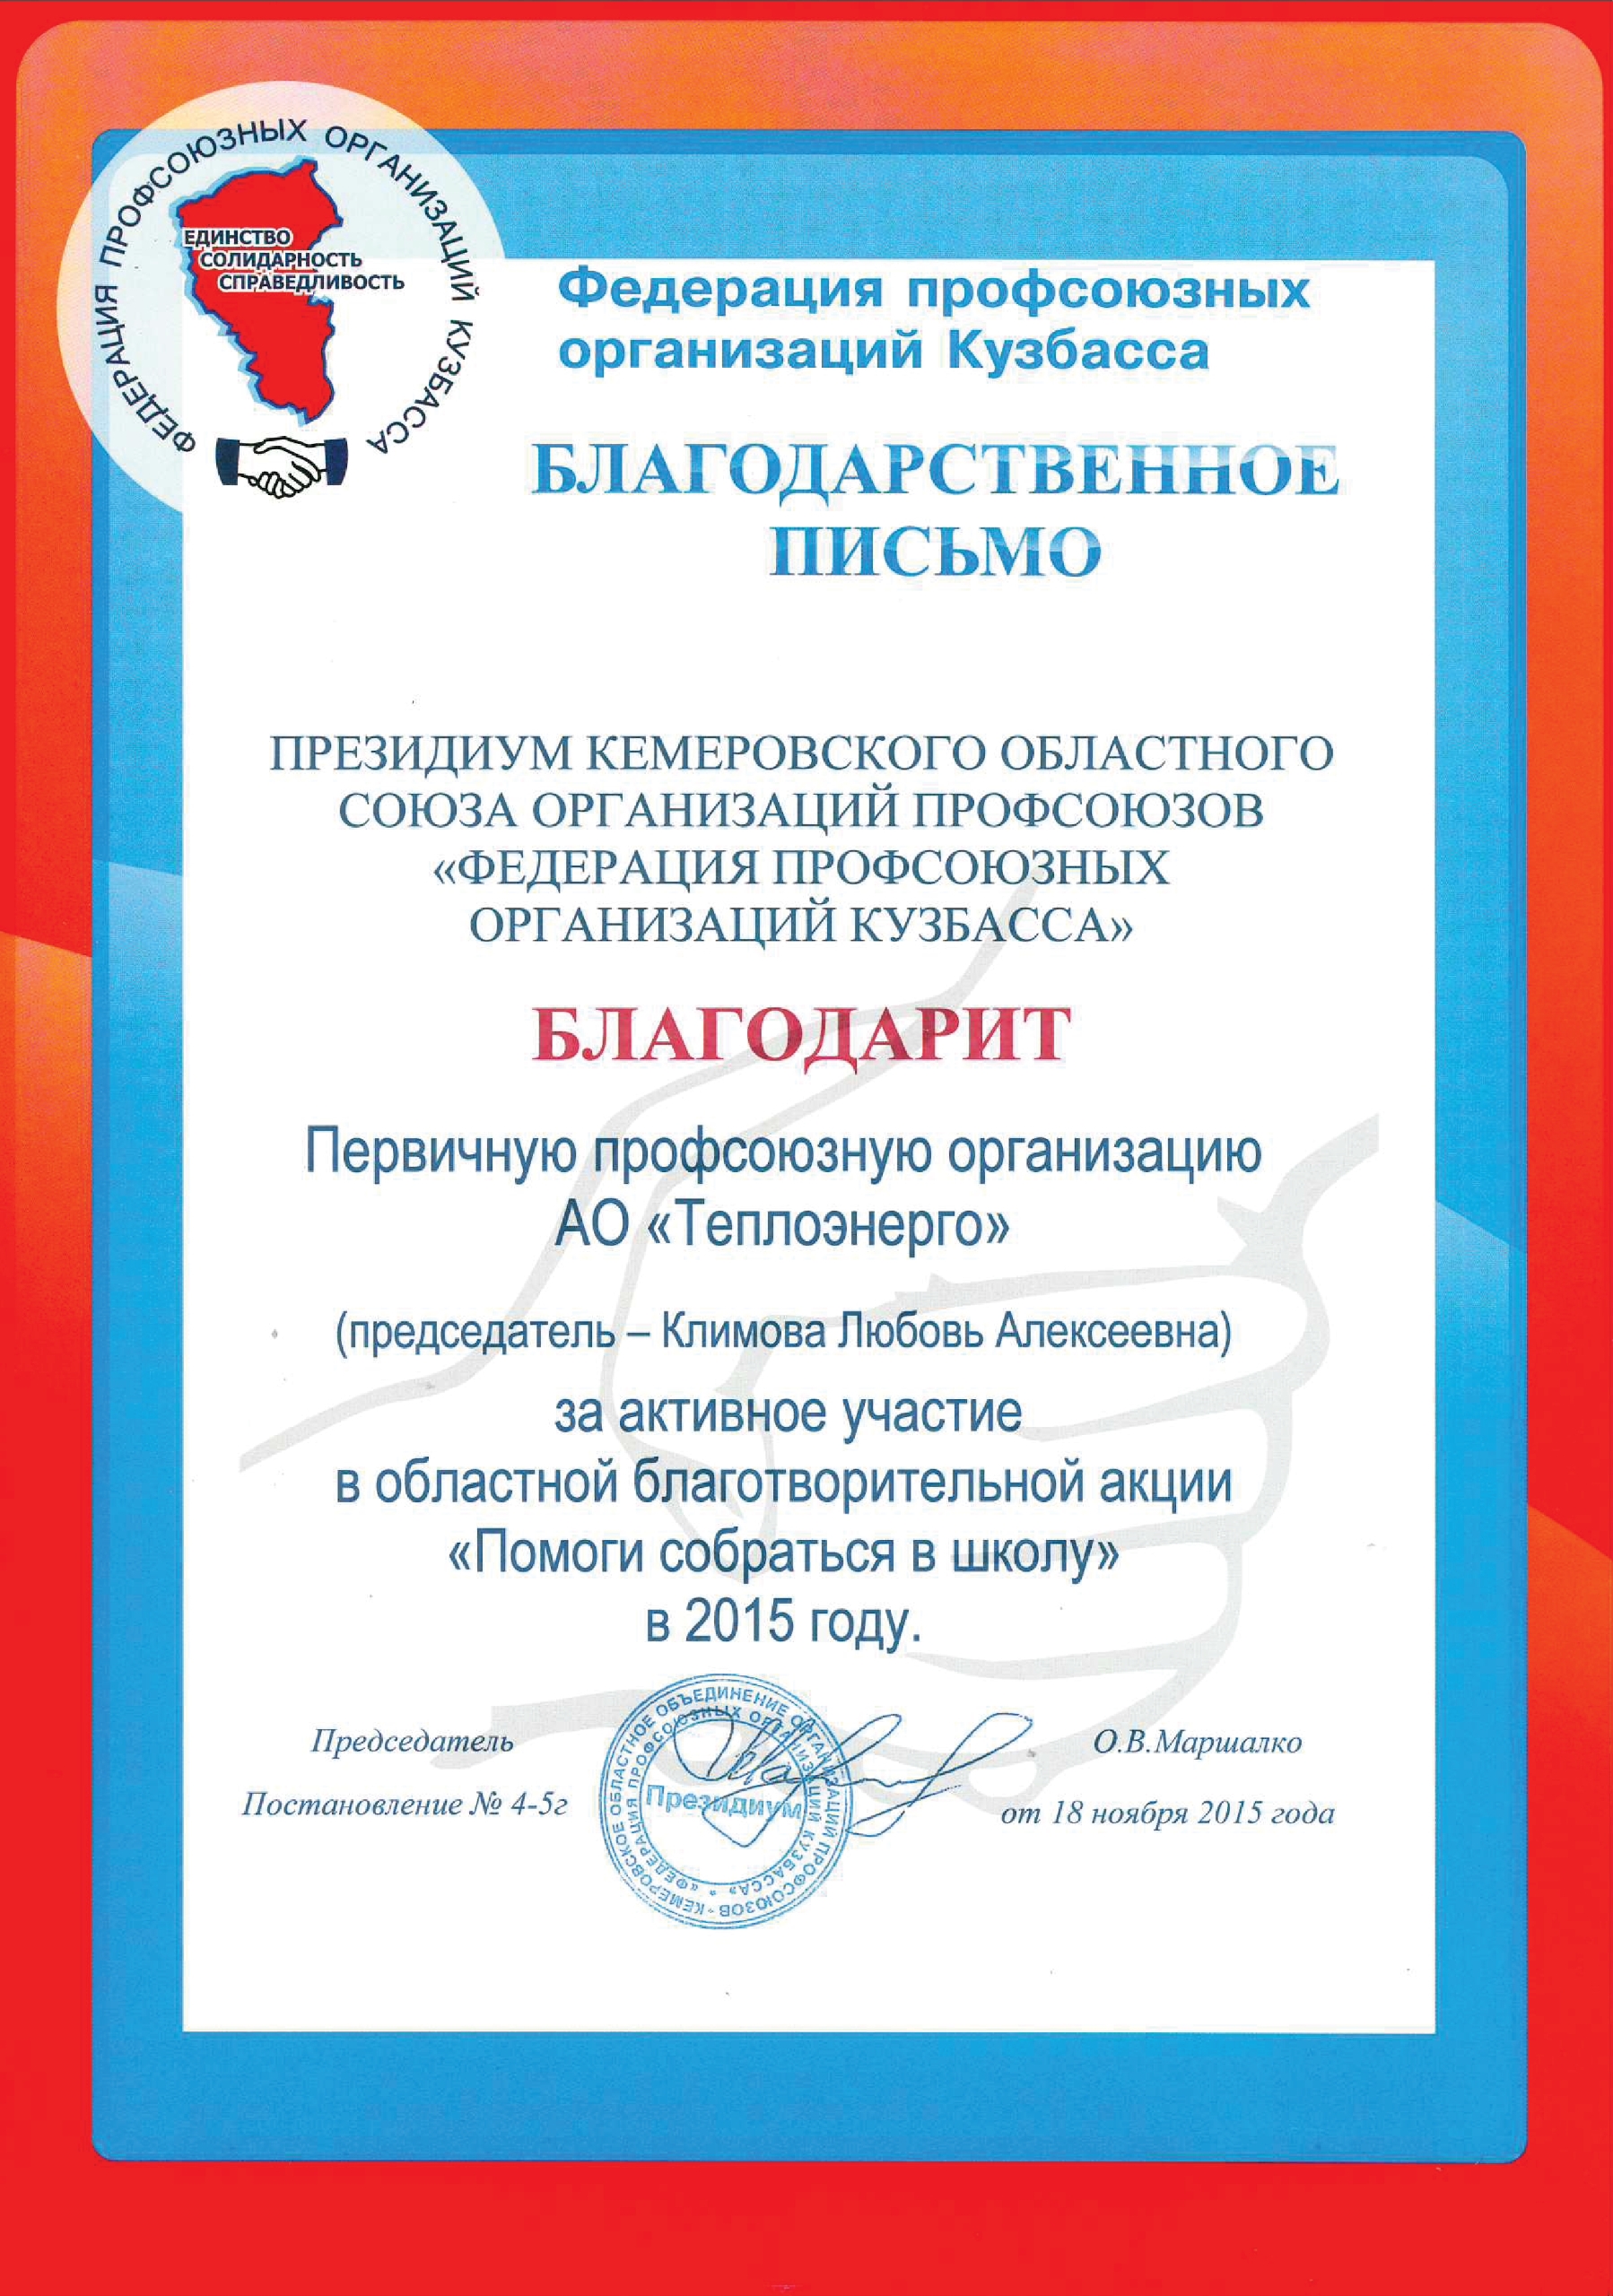 Благодарность от Федерации профсоюзных организаций Кузбасса, 2015 г.